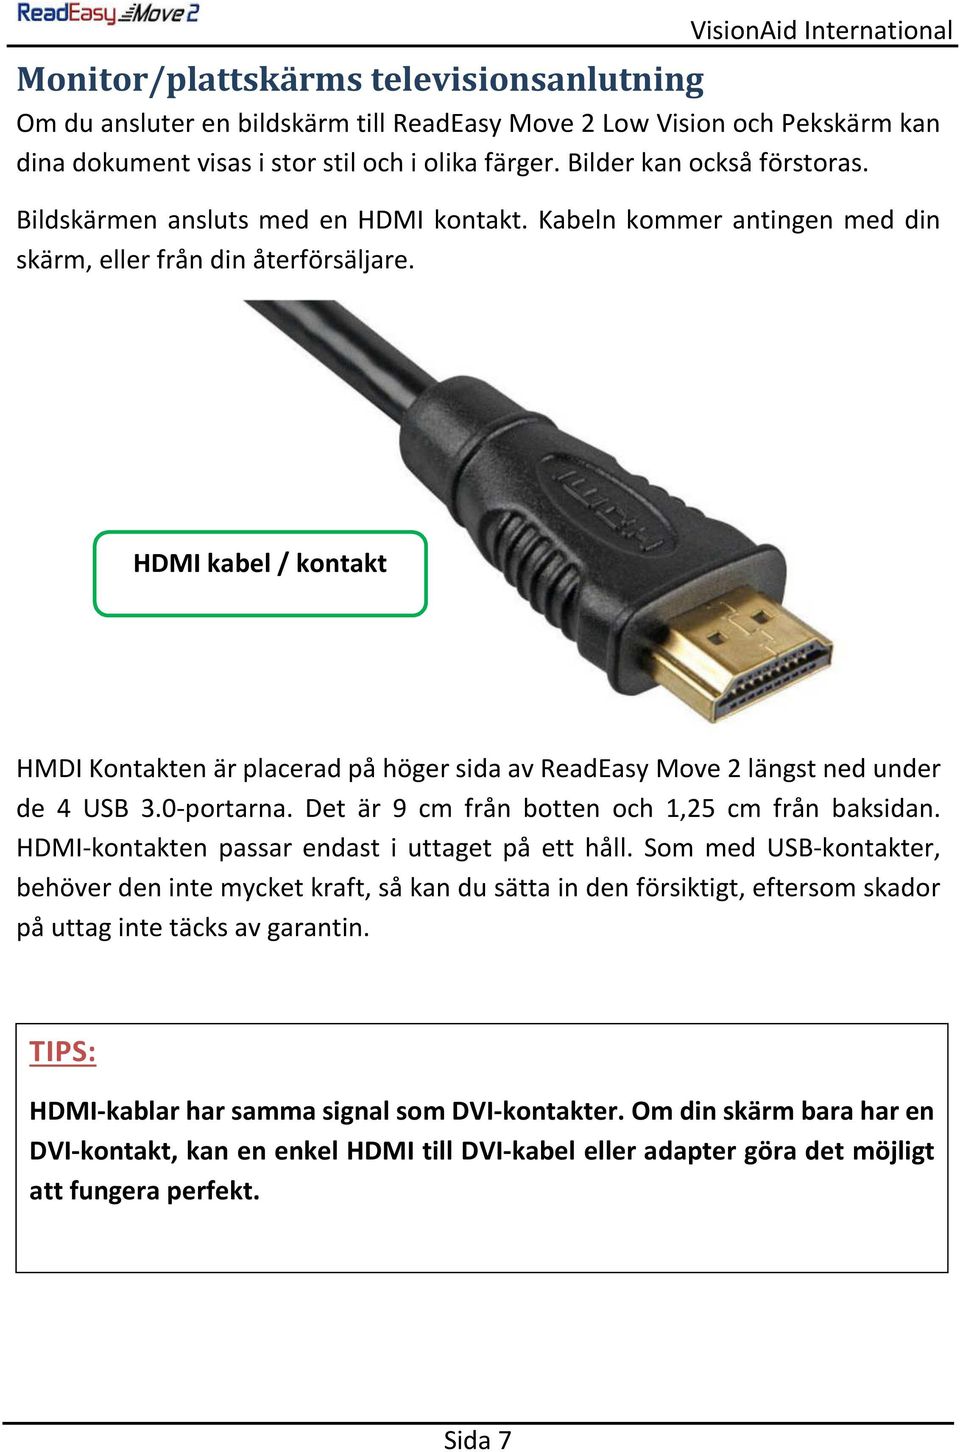 HDMI kabel / kontakt HMDI Kontakten är placerad på höger sida av ReadEasy Move 2 längst ned under de 4 USB 3.0-portarna. Det är 9 cm från botten och 1,25 cm från baksidan.